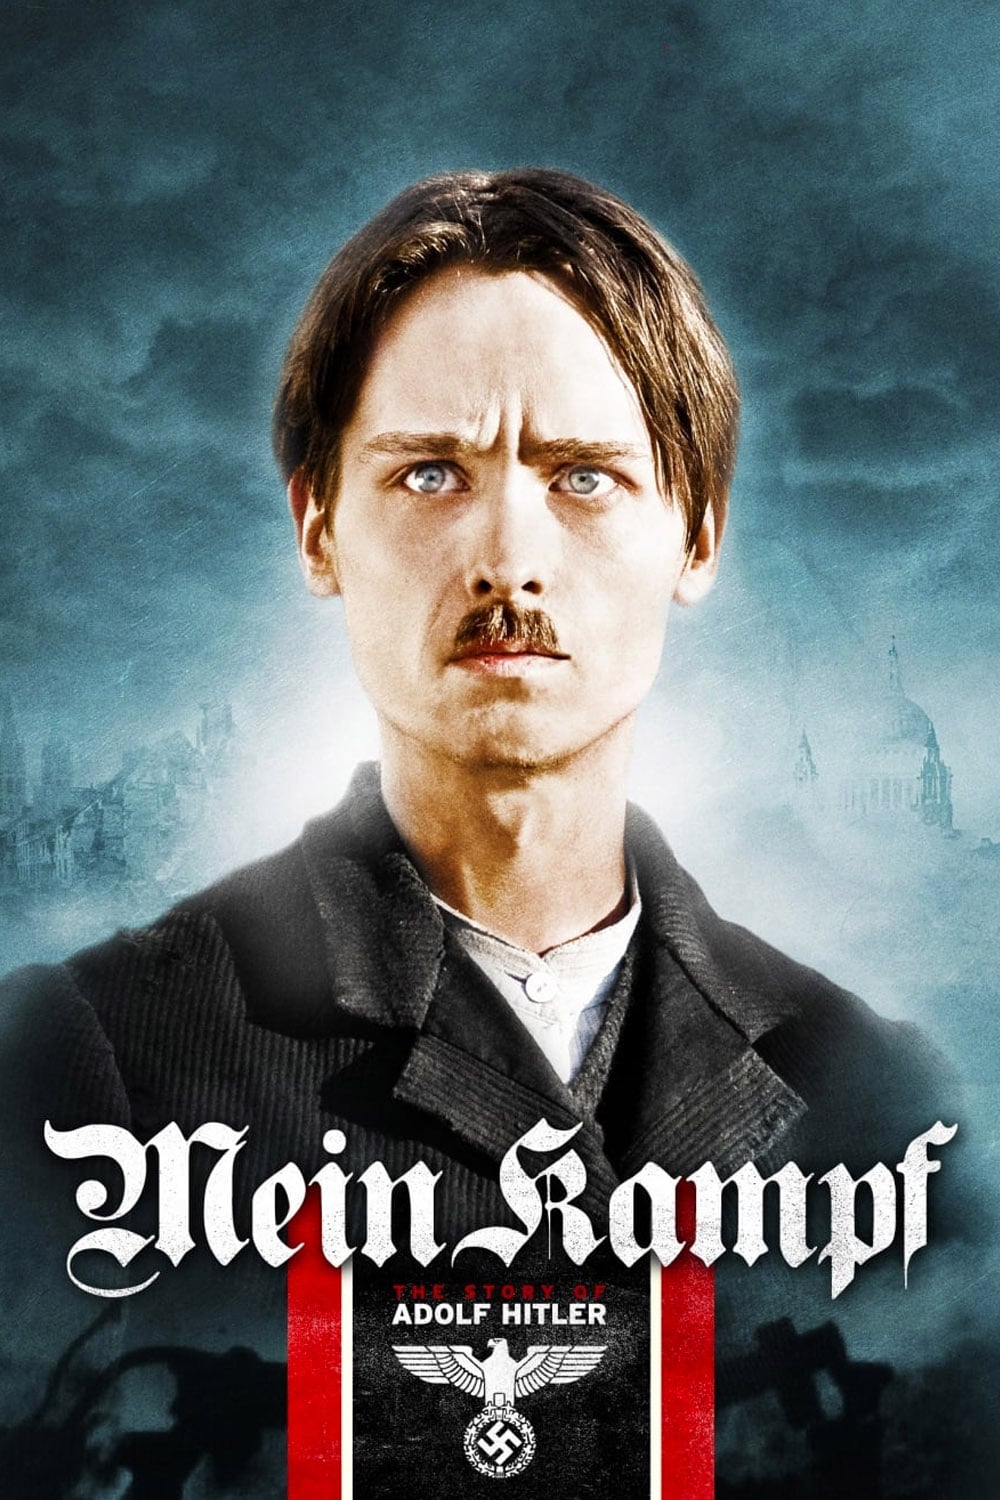 Mein Kampf (2009)